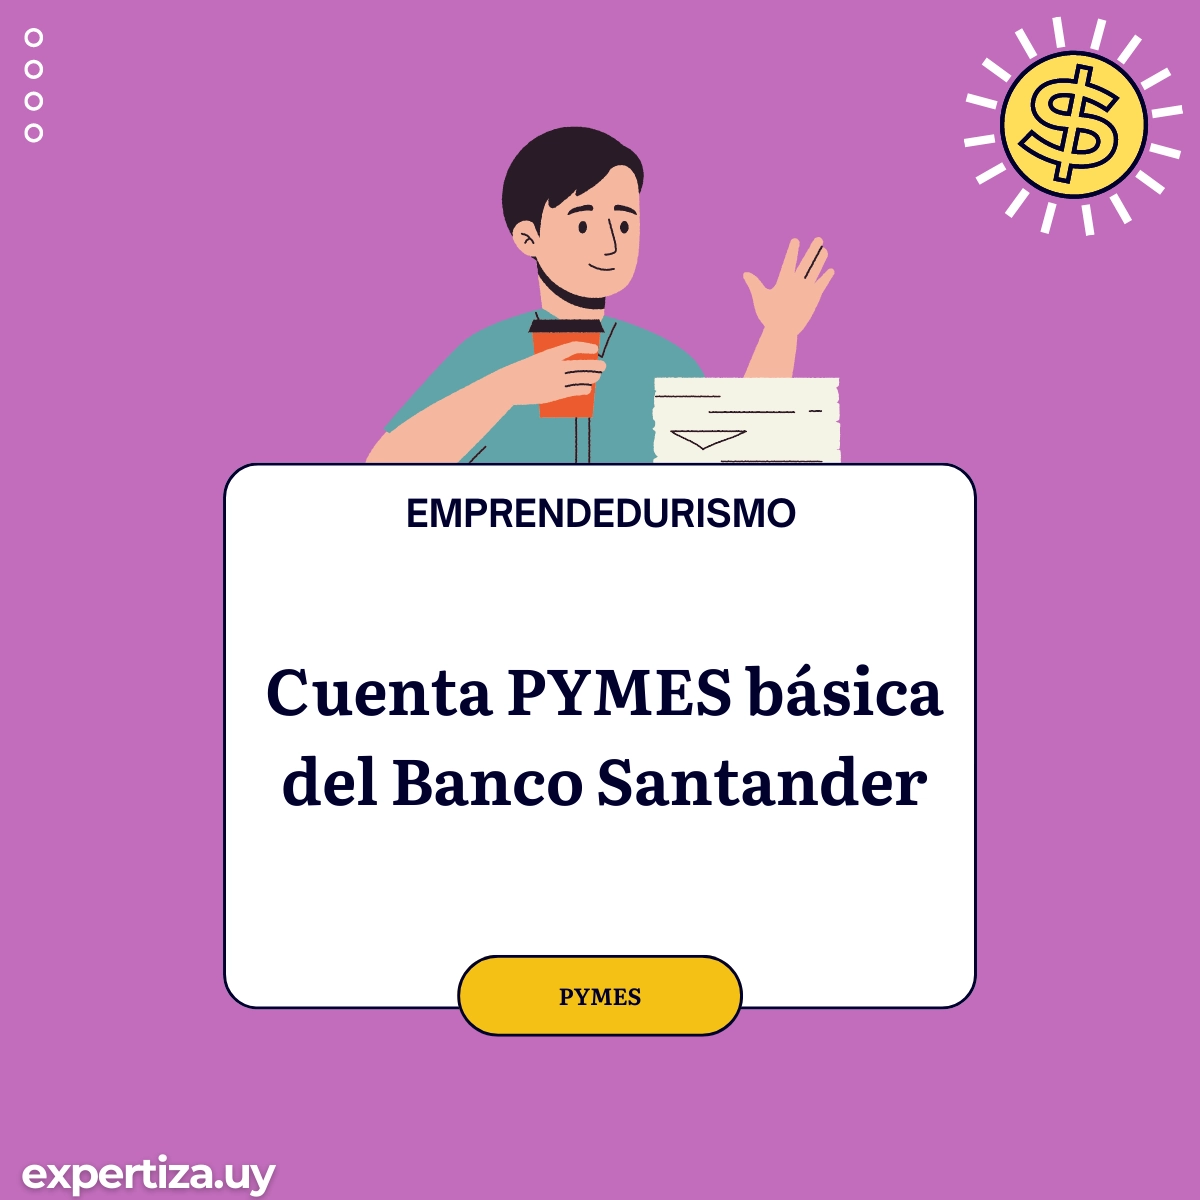 Cuenta PYMES básica del Banco Santander.